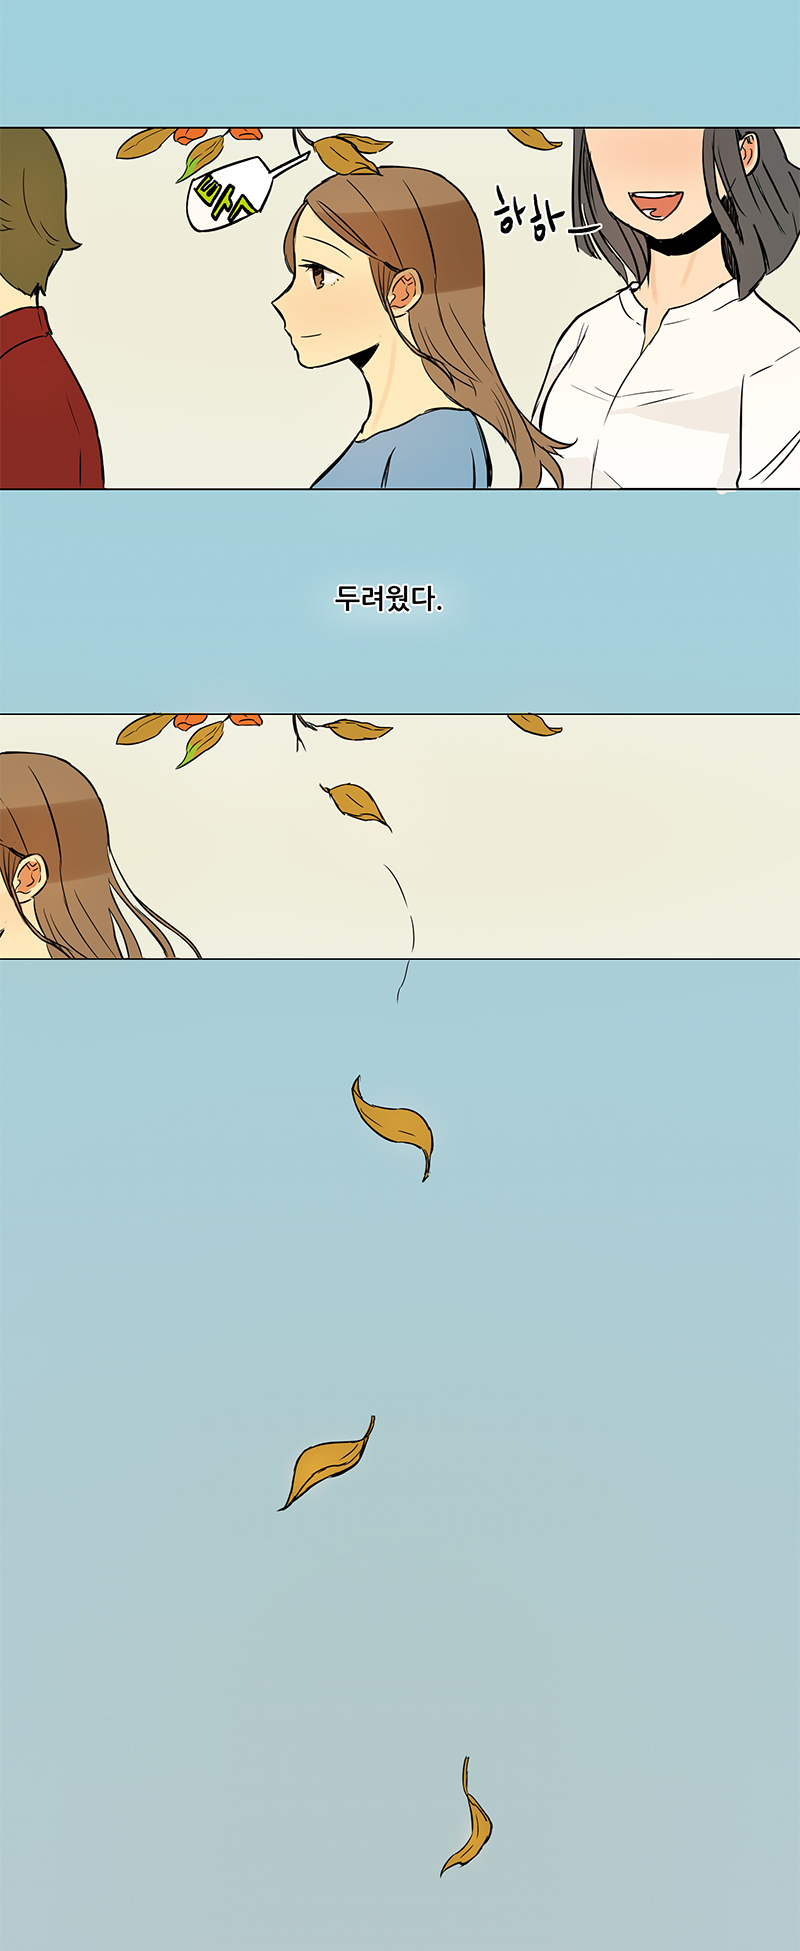                             떨어지는 낙엽 사이로 걷고 있는 서희.                                서희 :‘두려웠다. ’ 